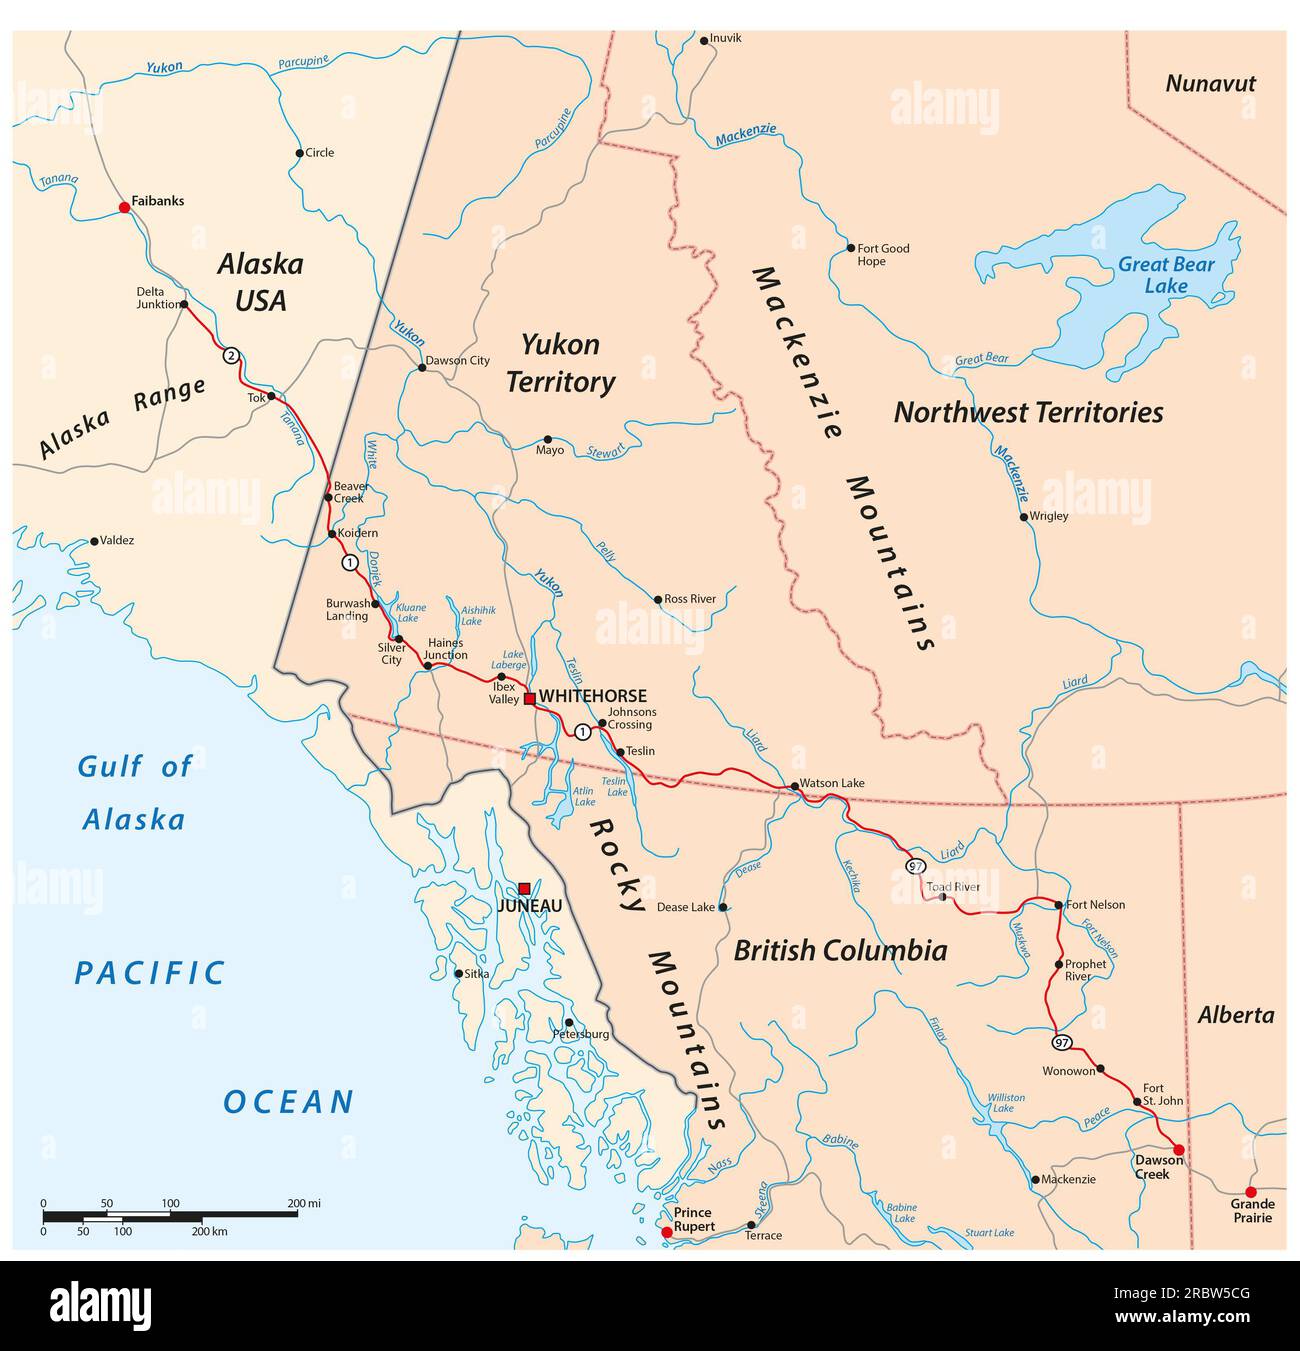 Carte routière vectorielle de la route de l'Alaska de Delta Junction à Dawson Creek, Canada, États-Unis Banque D'Images